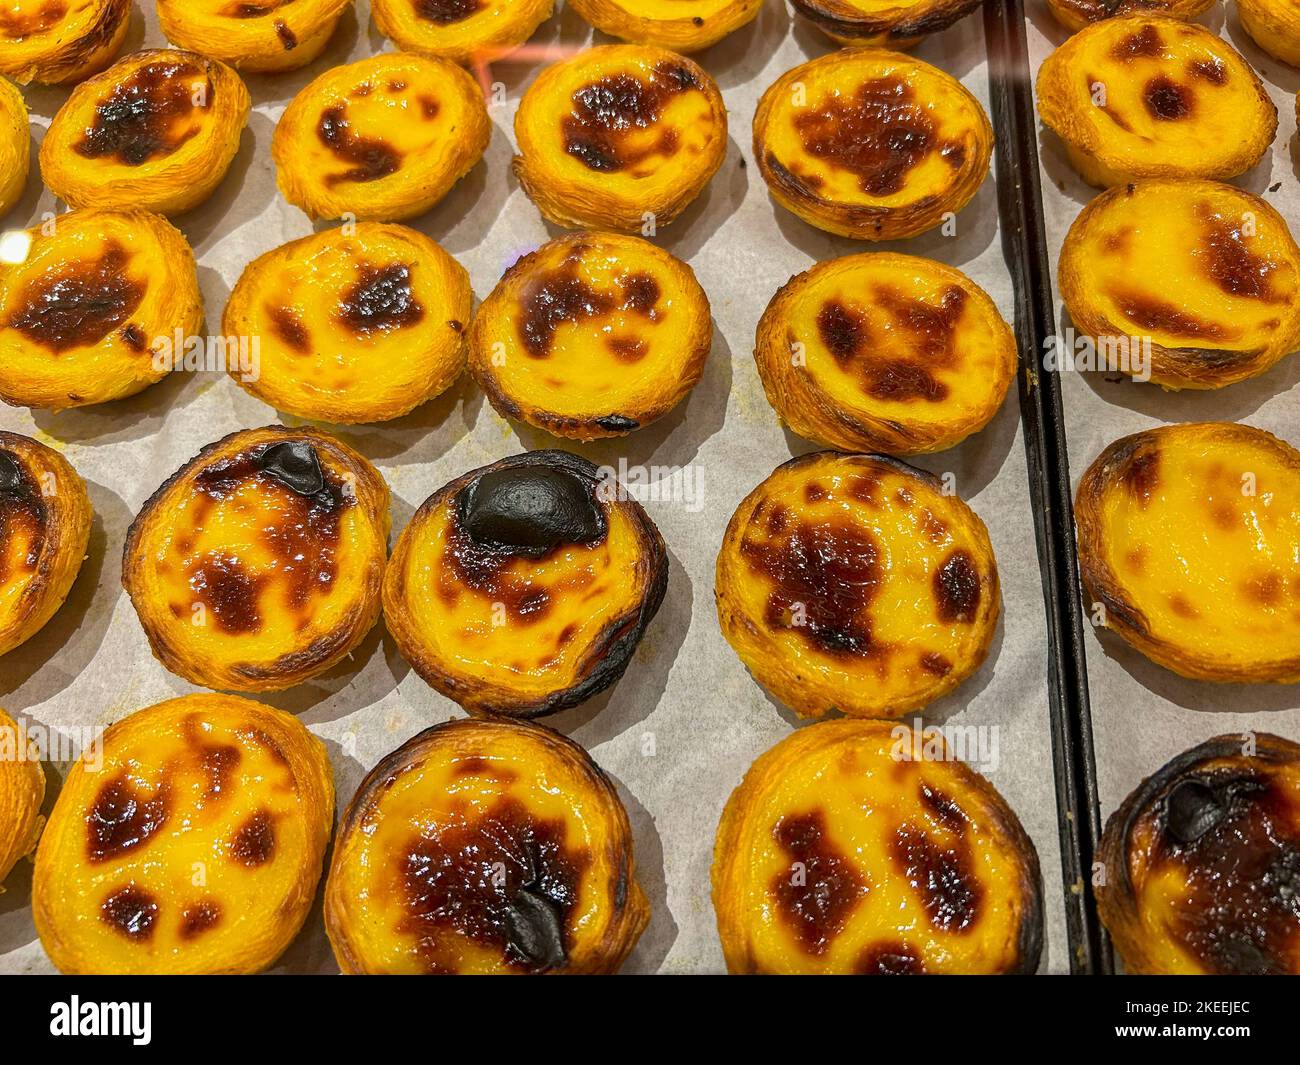 Lisbona, Portogallo, all'interno della panetteria portoghese locale, dettaglio, torte al forno in mostra, specialità locali Foto Stock